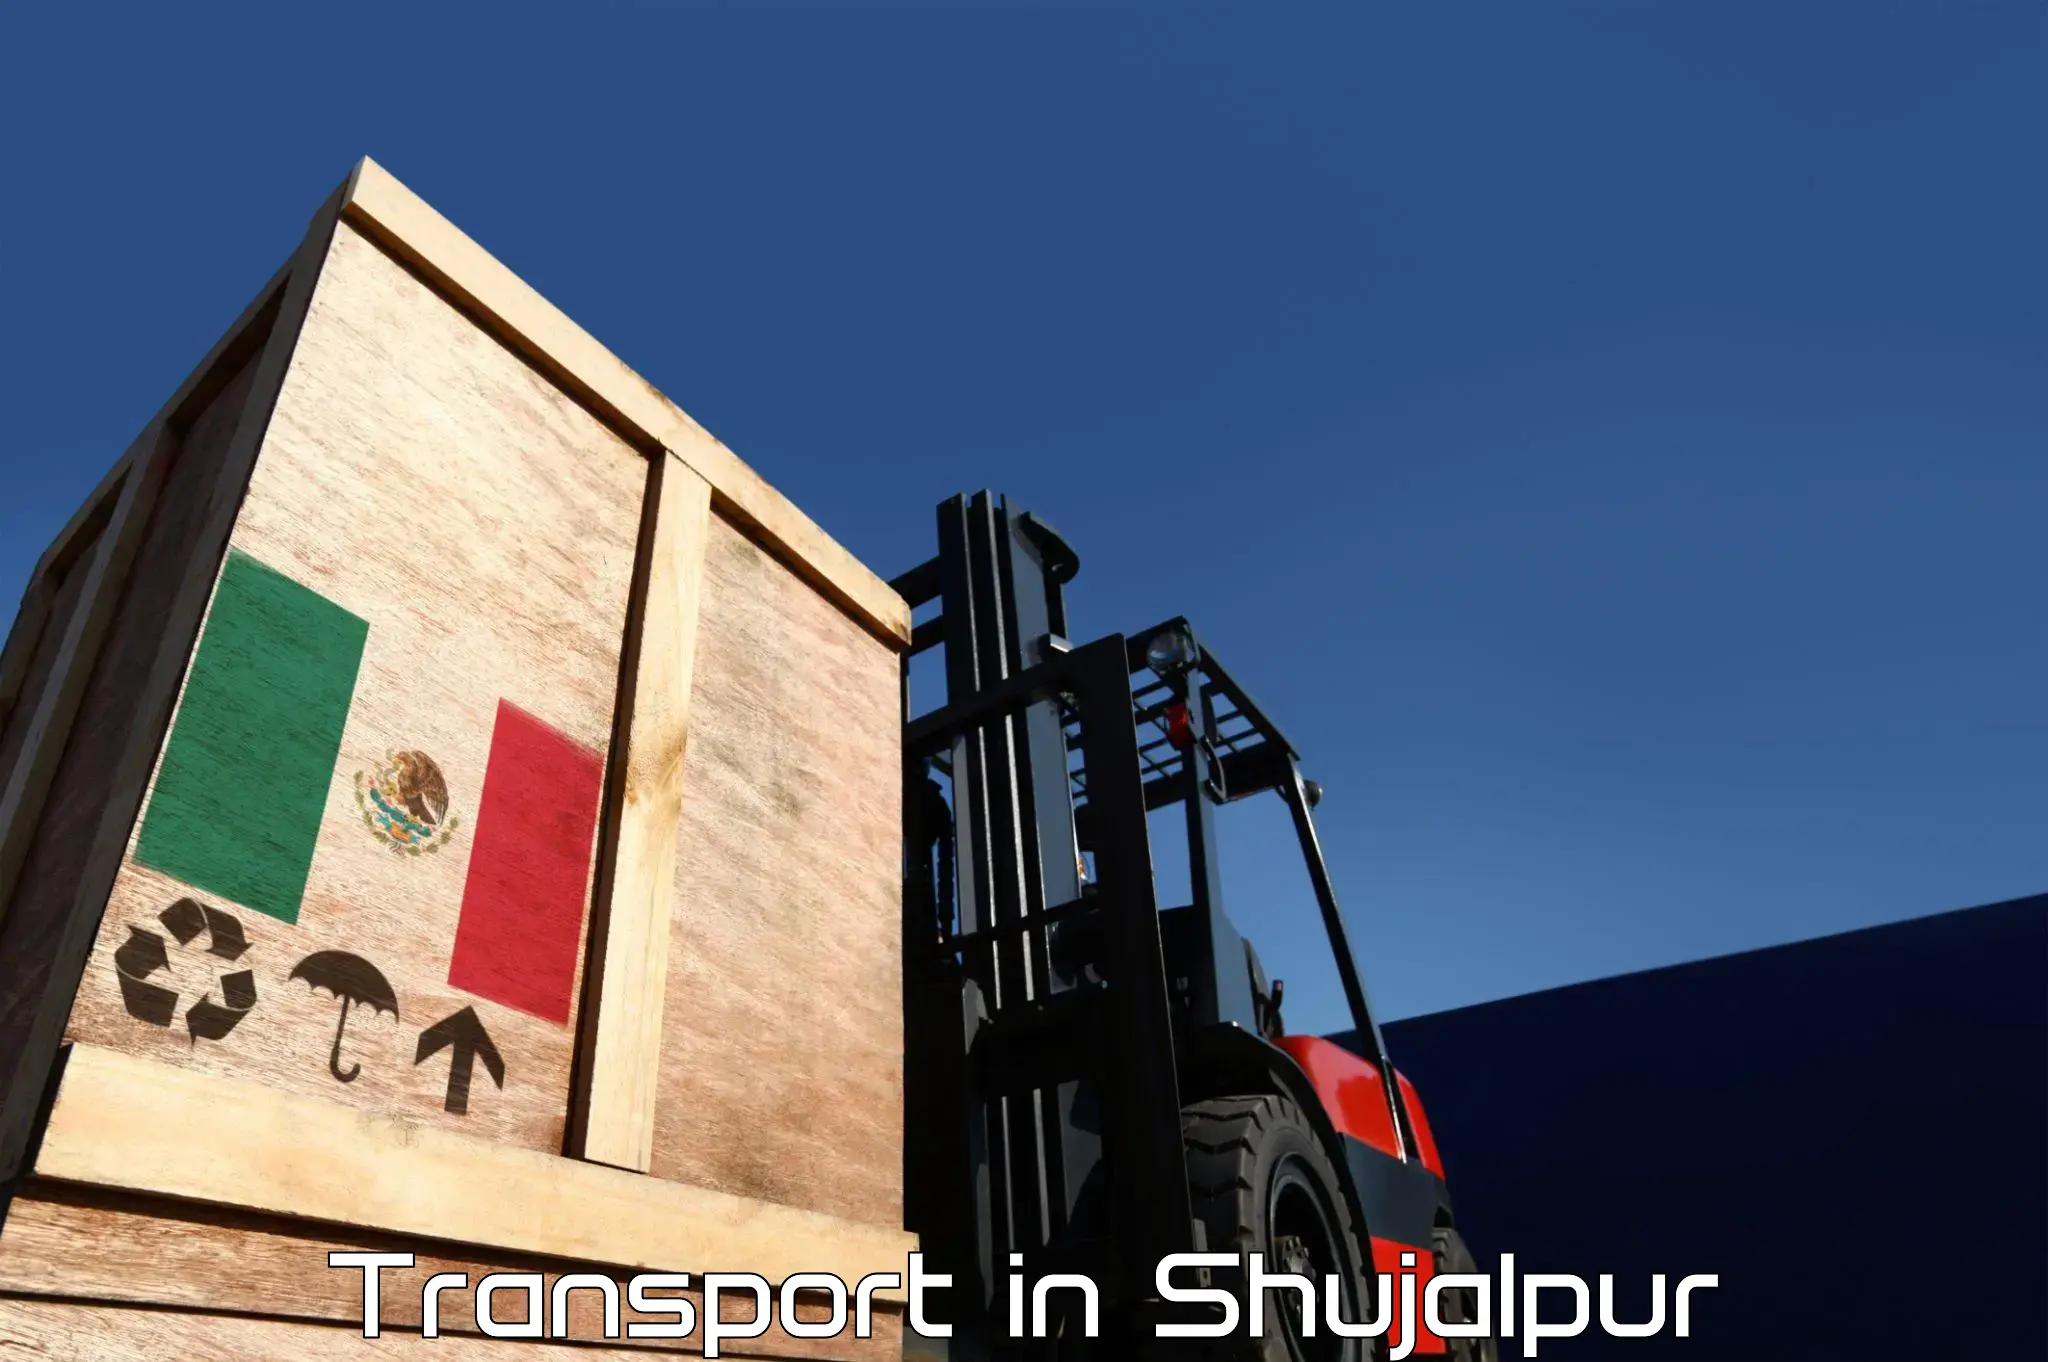 Interstate transport services in Shujalpur